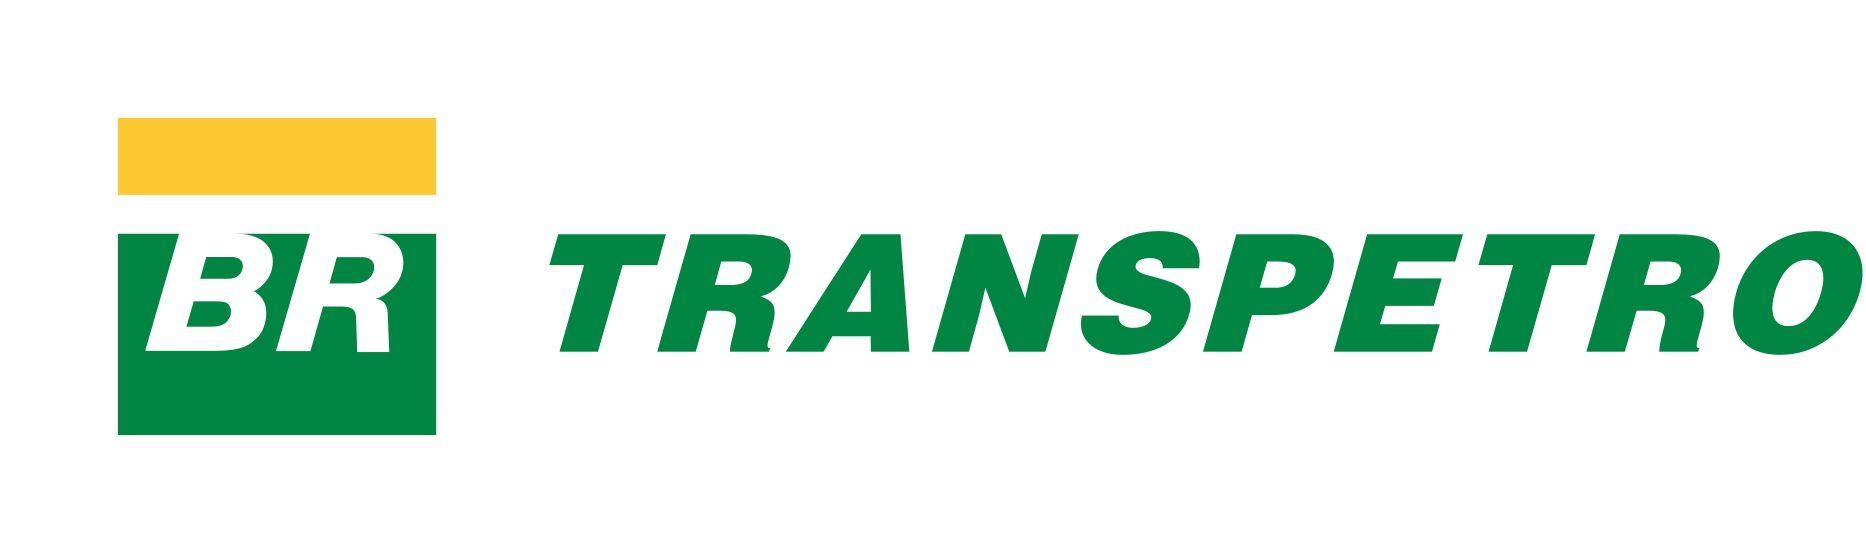 Green BR Logo - Transpetro - Internas